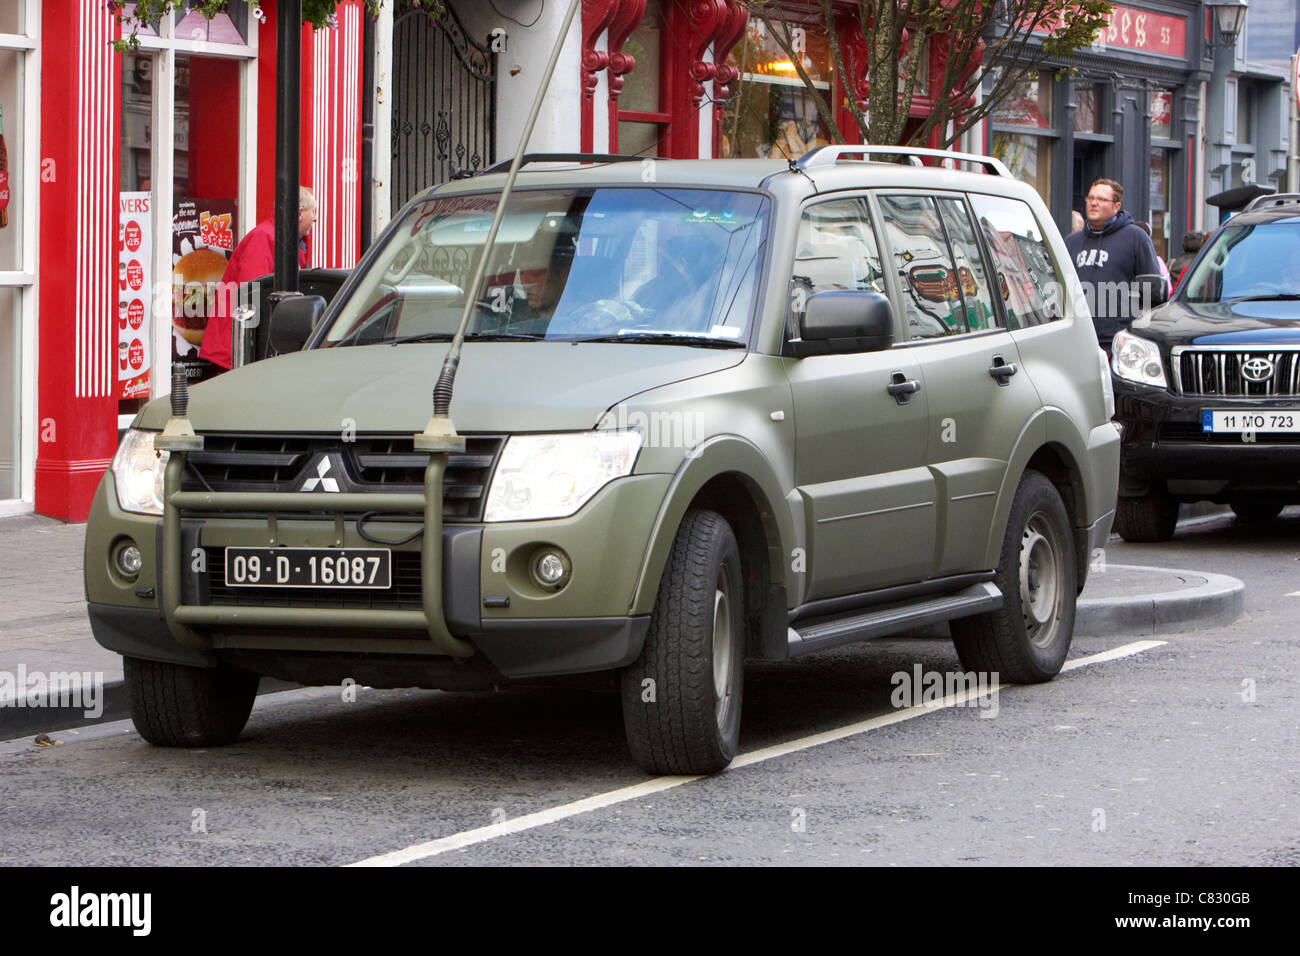 Irlandese le forze di difesa oglaigh na heireann irish esercito pattuglia Mitsubishi veicolo parcheggiato in una strada a Ballina County Mayo Repubblica Foto Stock